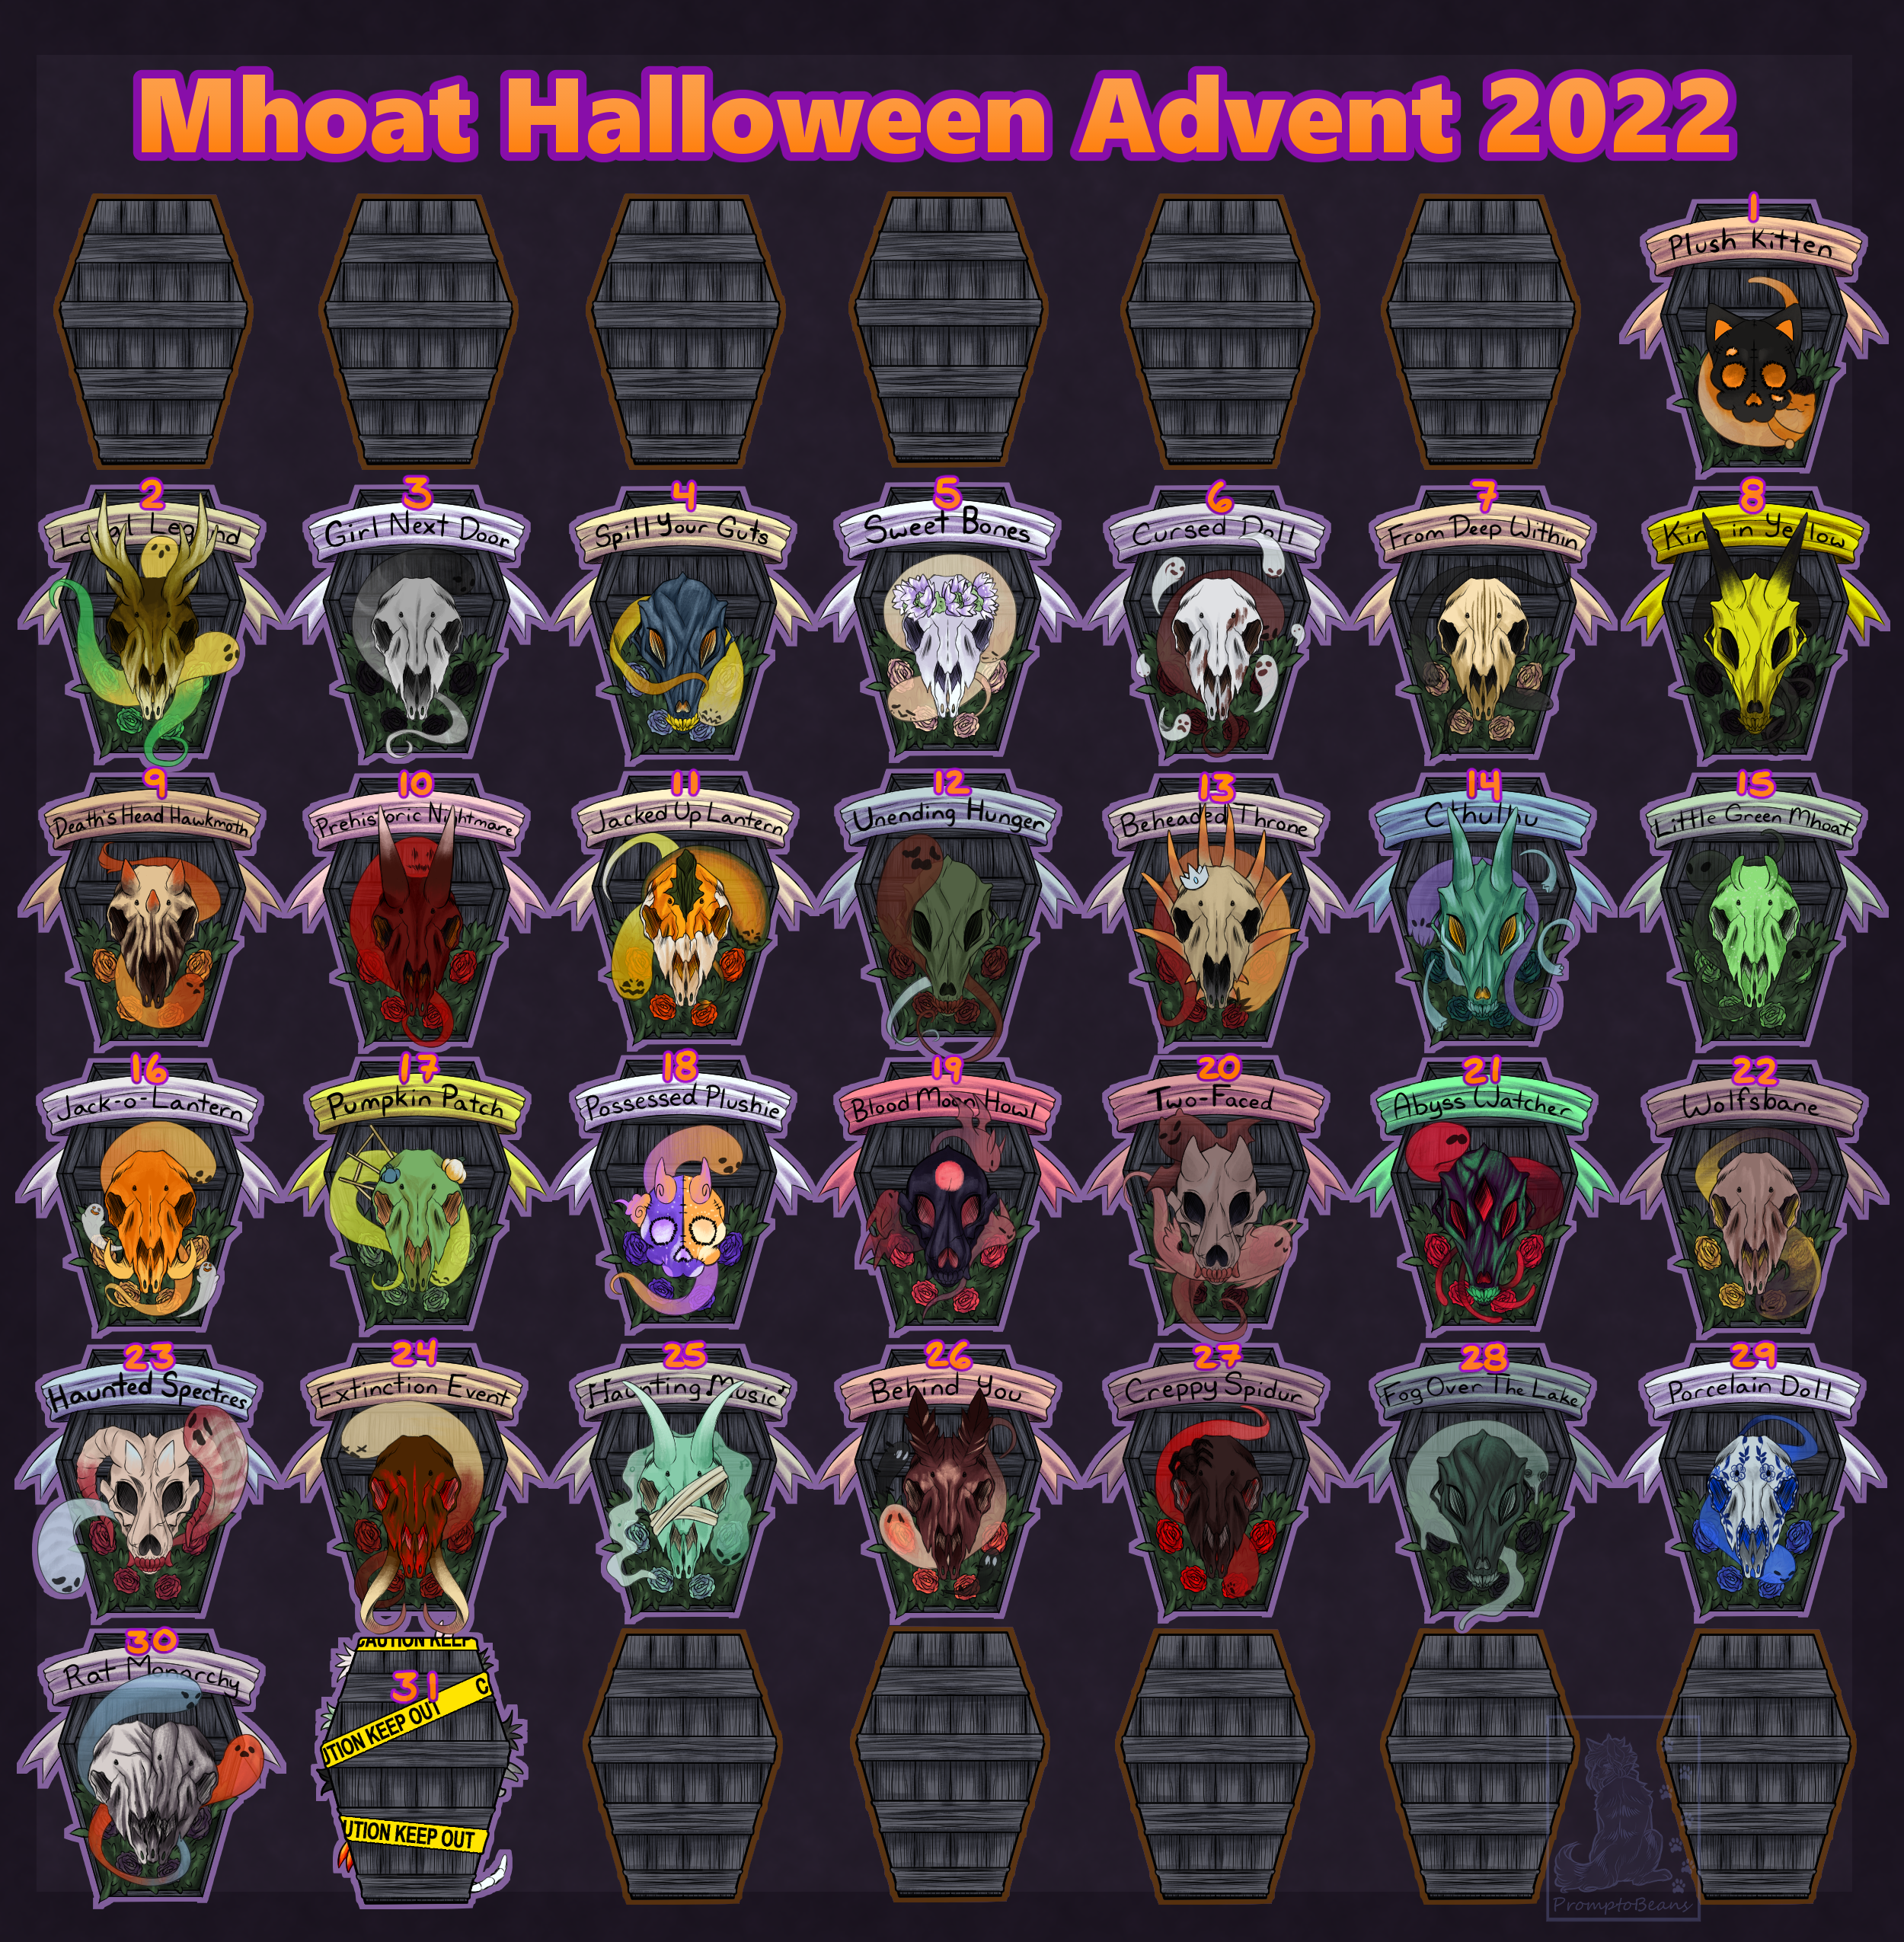 Mhoat Halloween Advent Schedule